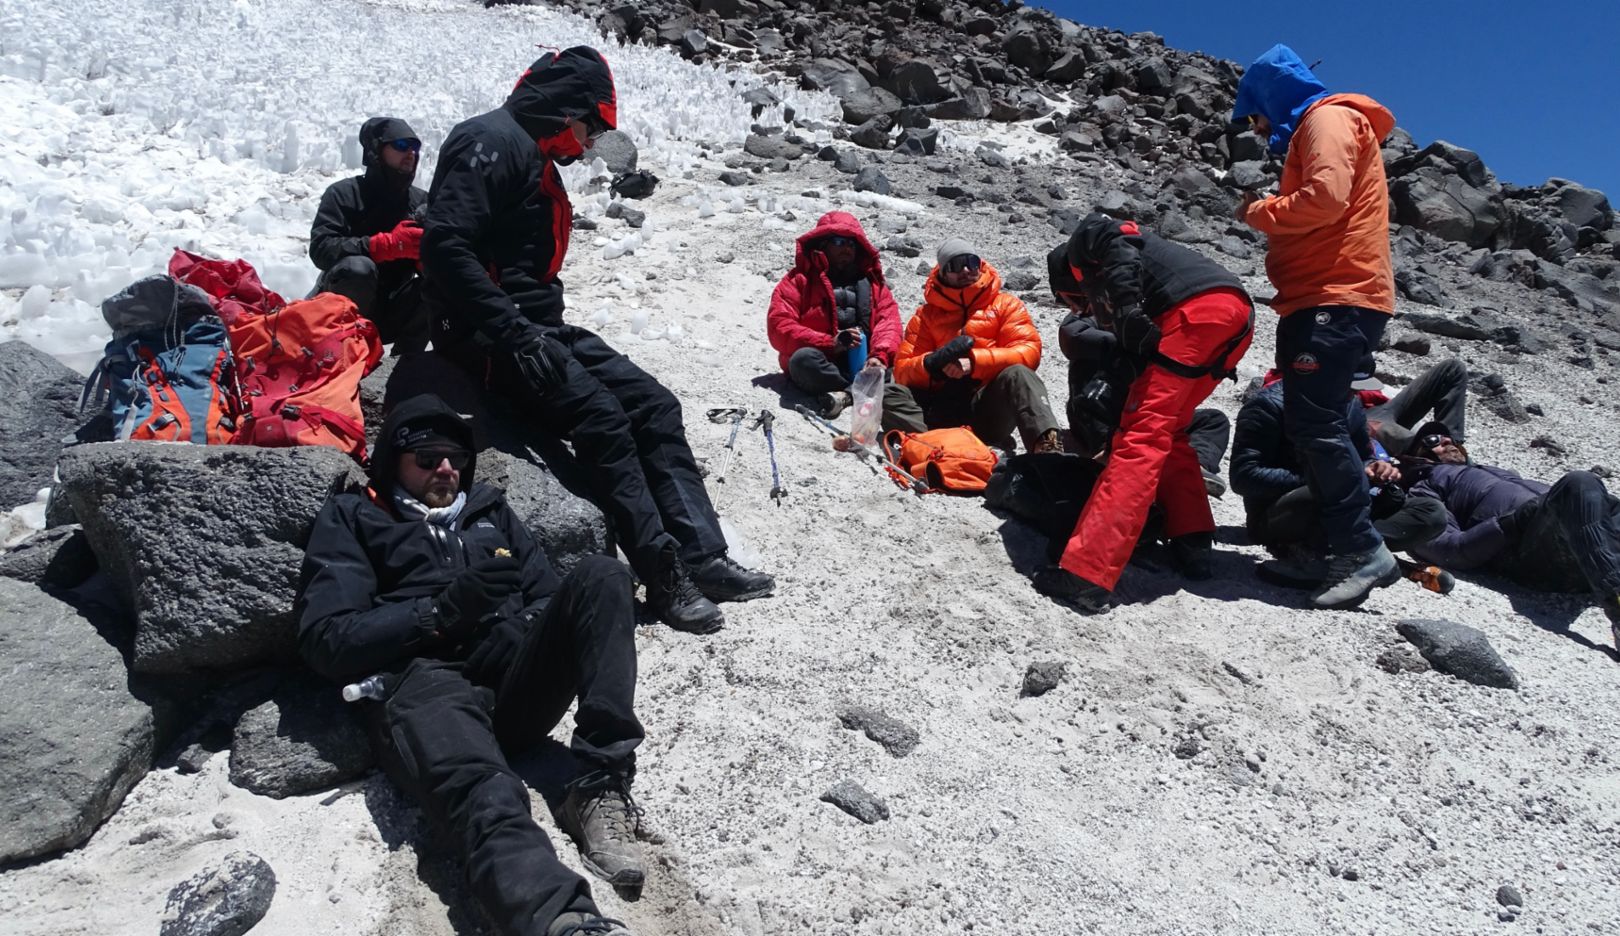 Grenzen verkennen: het team werd vergezeld door Europese bergbeklimmers, Chileense berggidsen en twee ervaren alpiene medici.